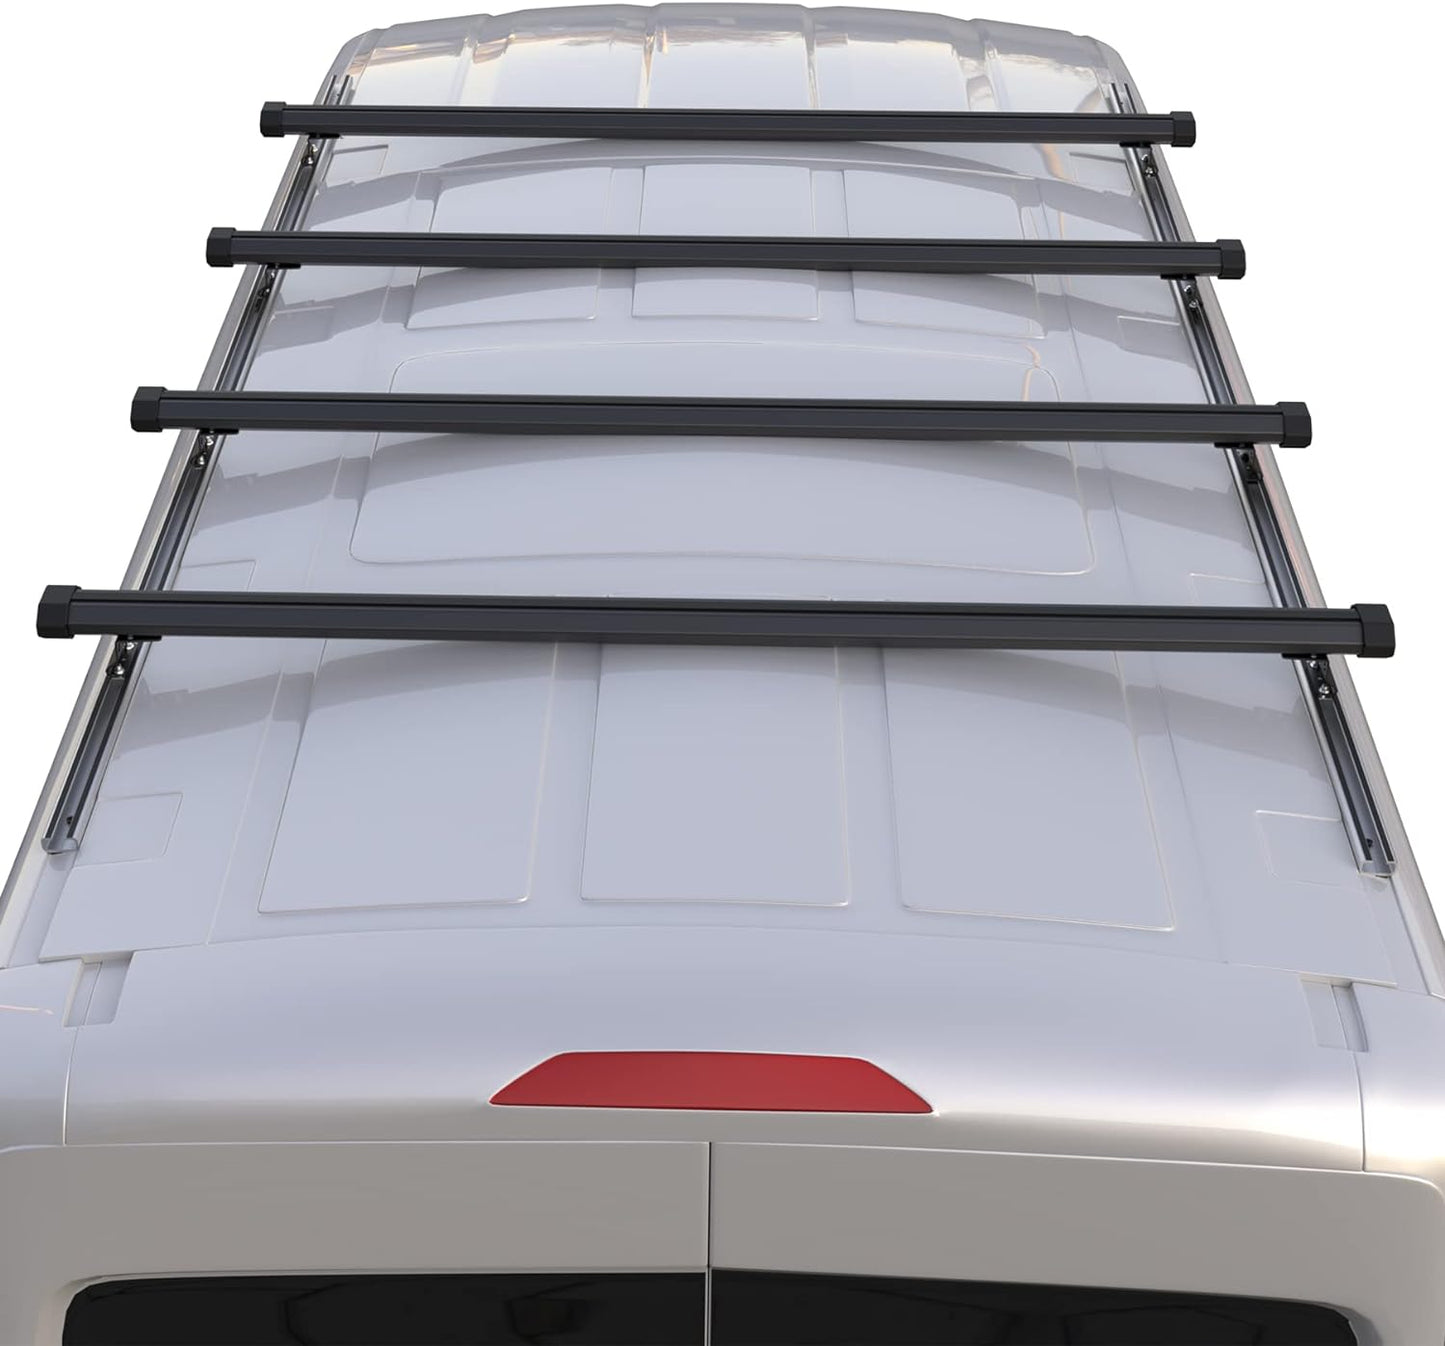 Roof Ladder Rack W/Side Rails for 2007-On Sprinter - MELIPRON